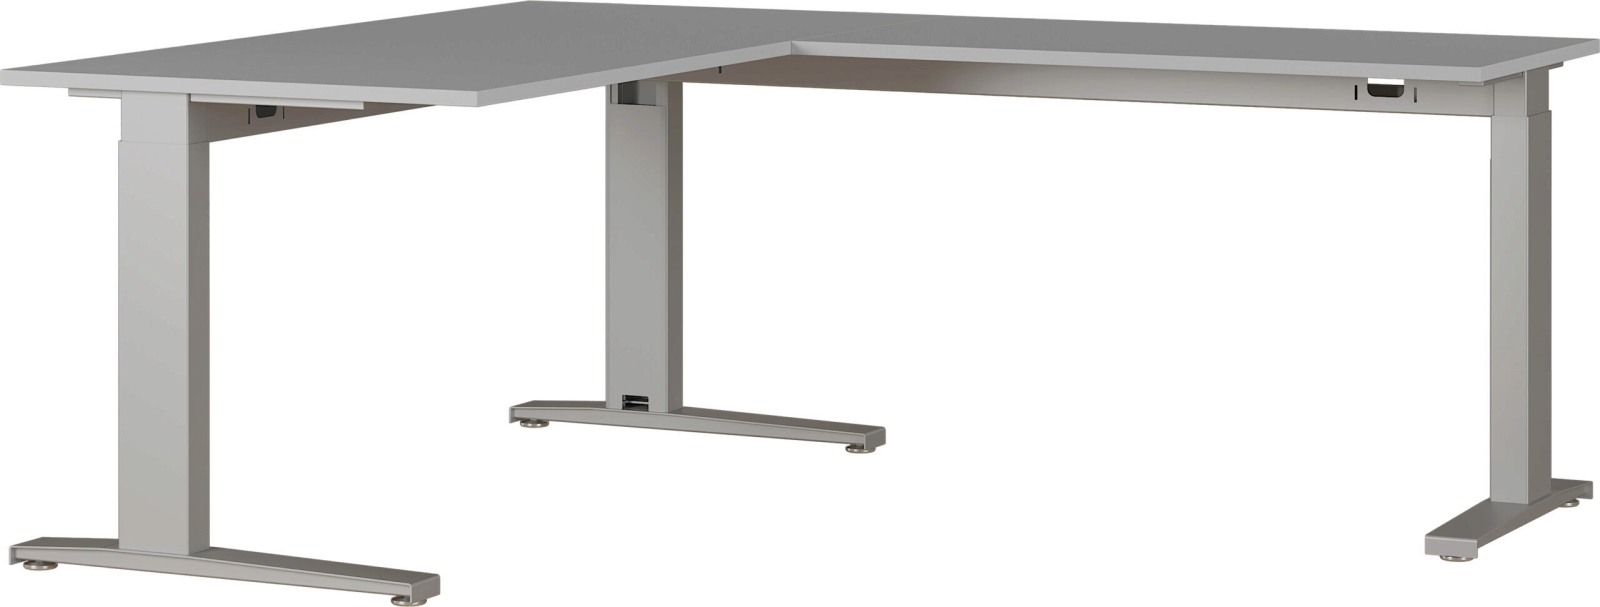 8513 höhenverstellbarer mechanischer Schreibtisch Arbeitstisch Bürotisch Büromöbel Winkelschreibtisch Lichtgrau/Silber oder SchwarzNachbildung